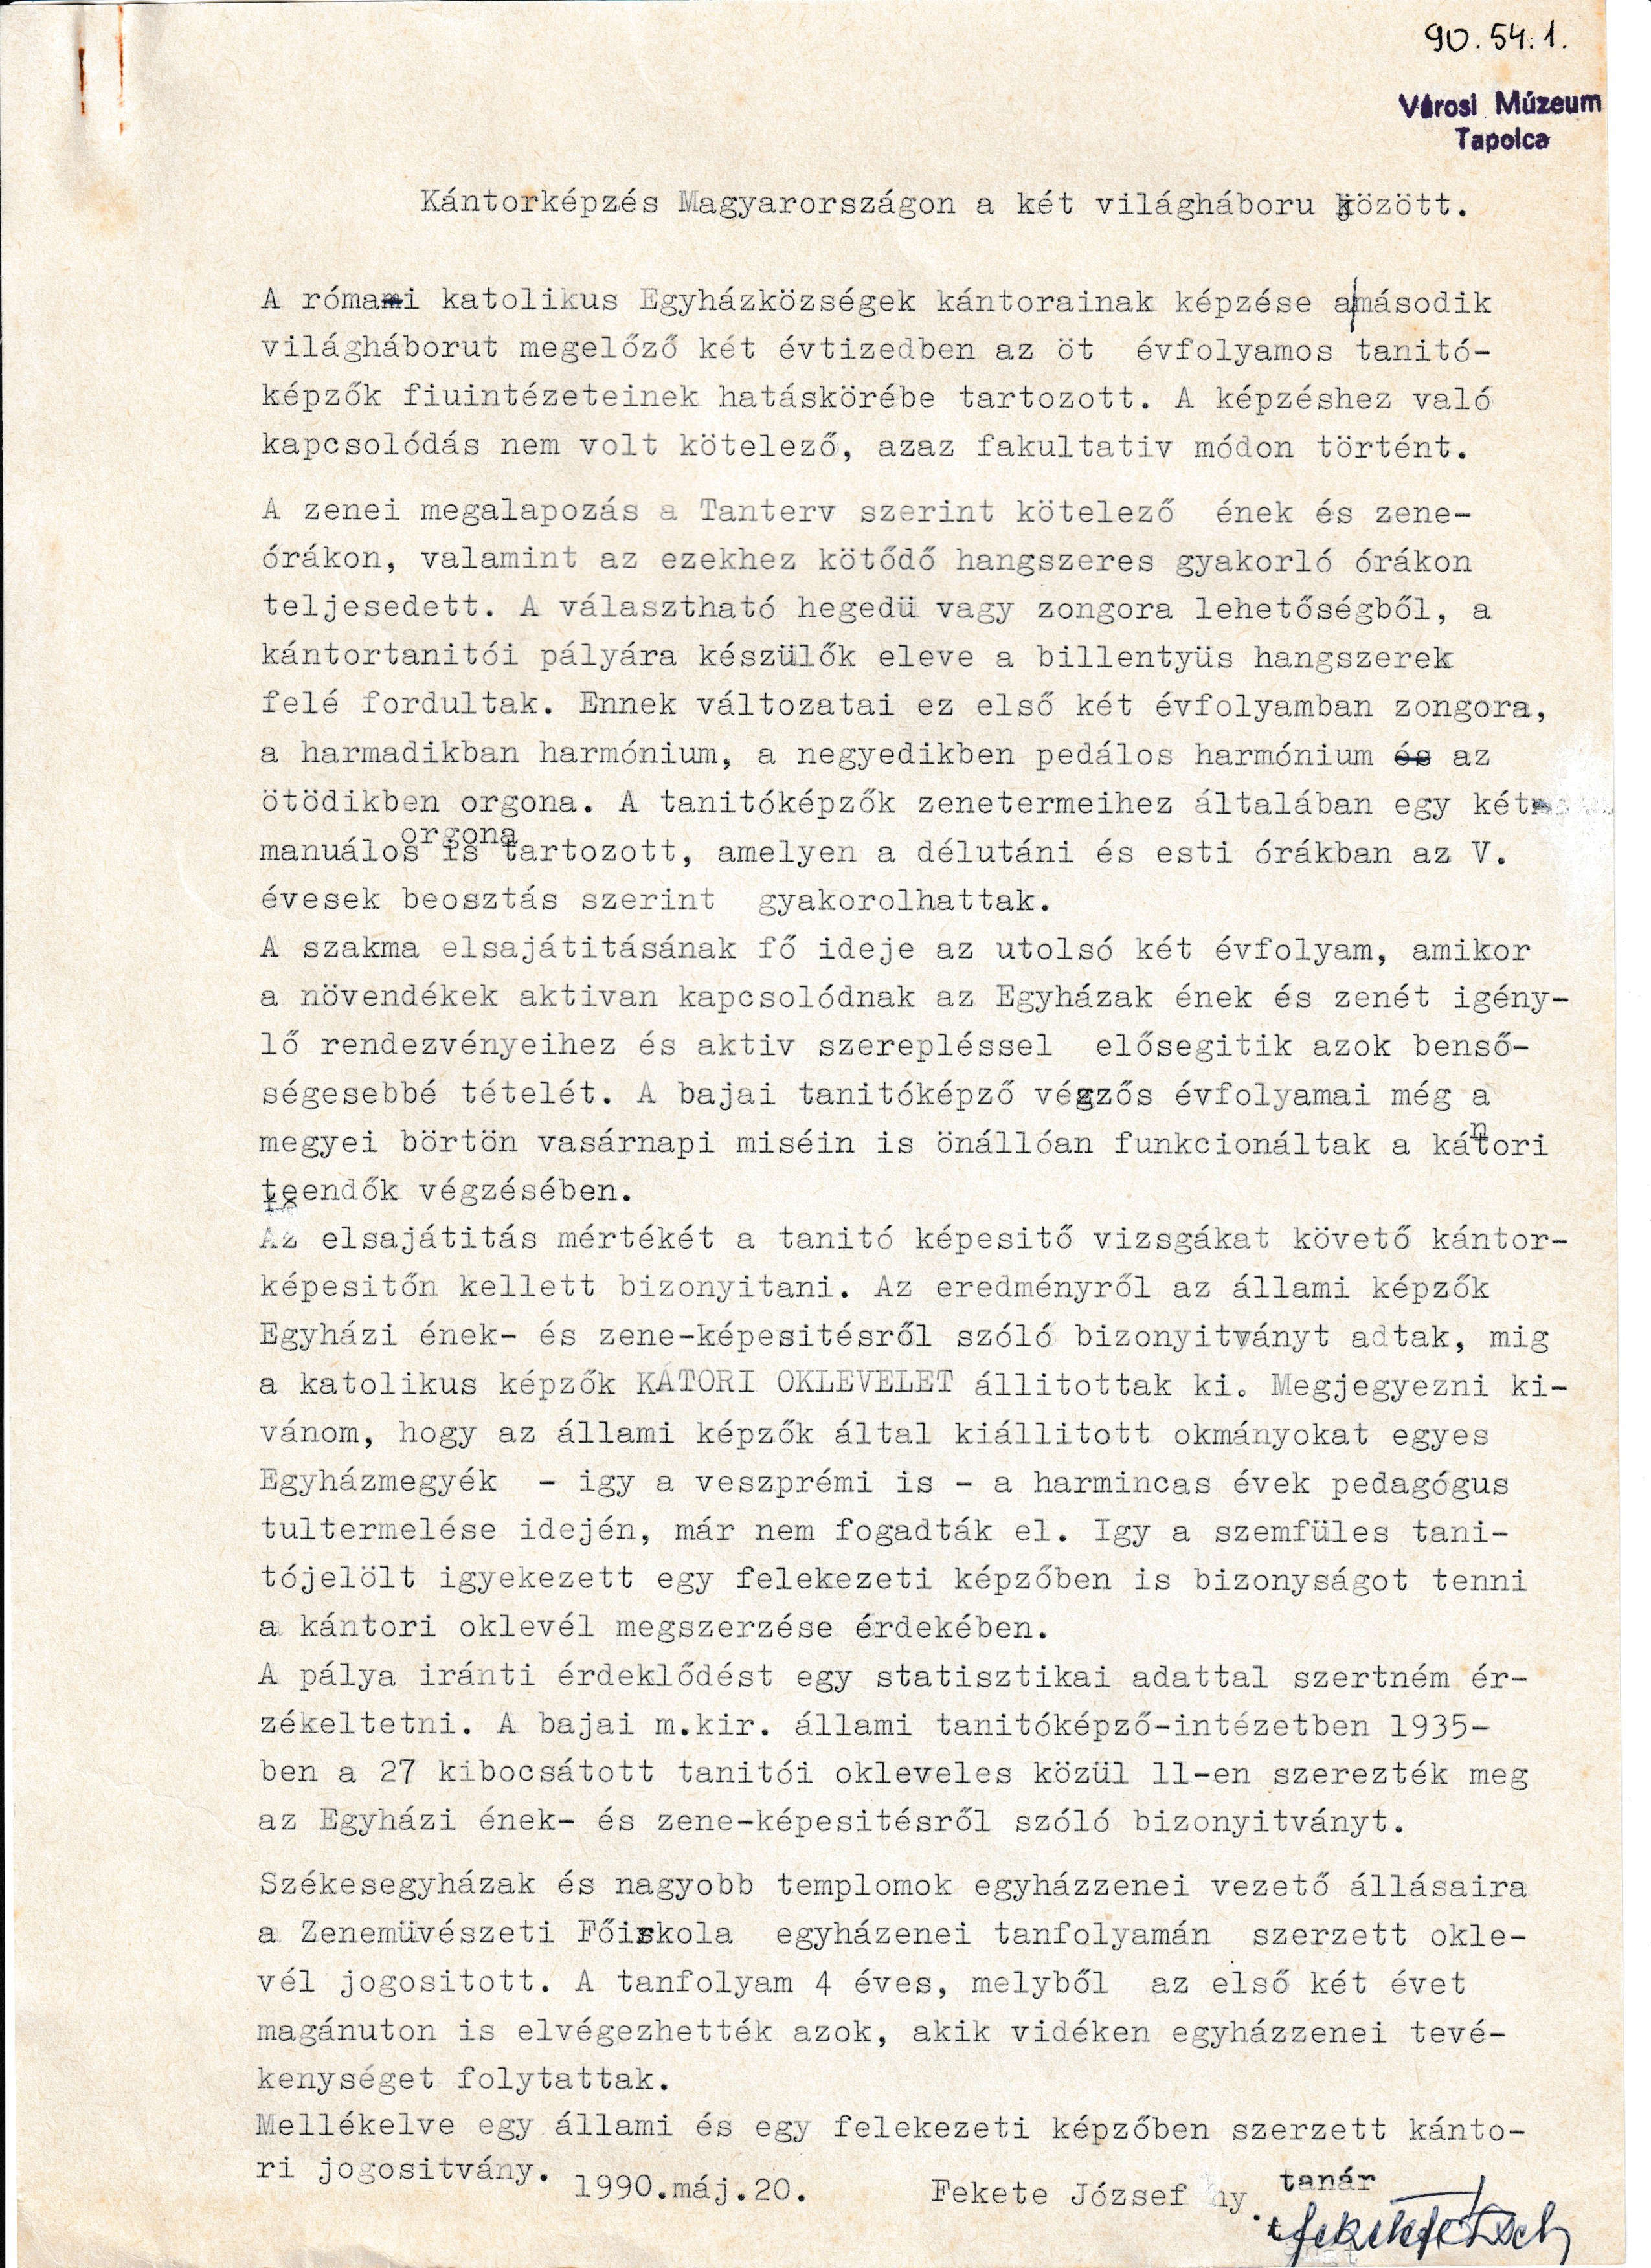 Fekete József: Kántorképzés Magyarországon a két világháború között című írása (Tapolcai Városi Múzeum CC BY-NC-SA)